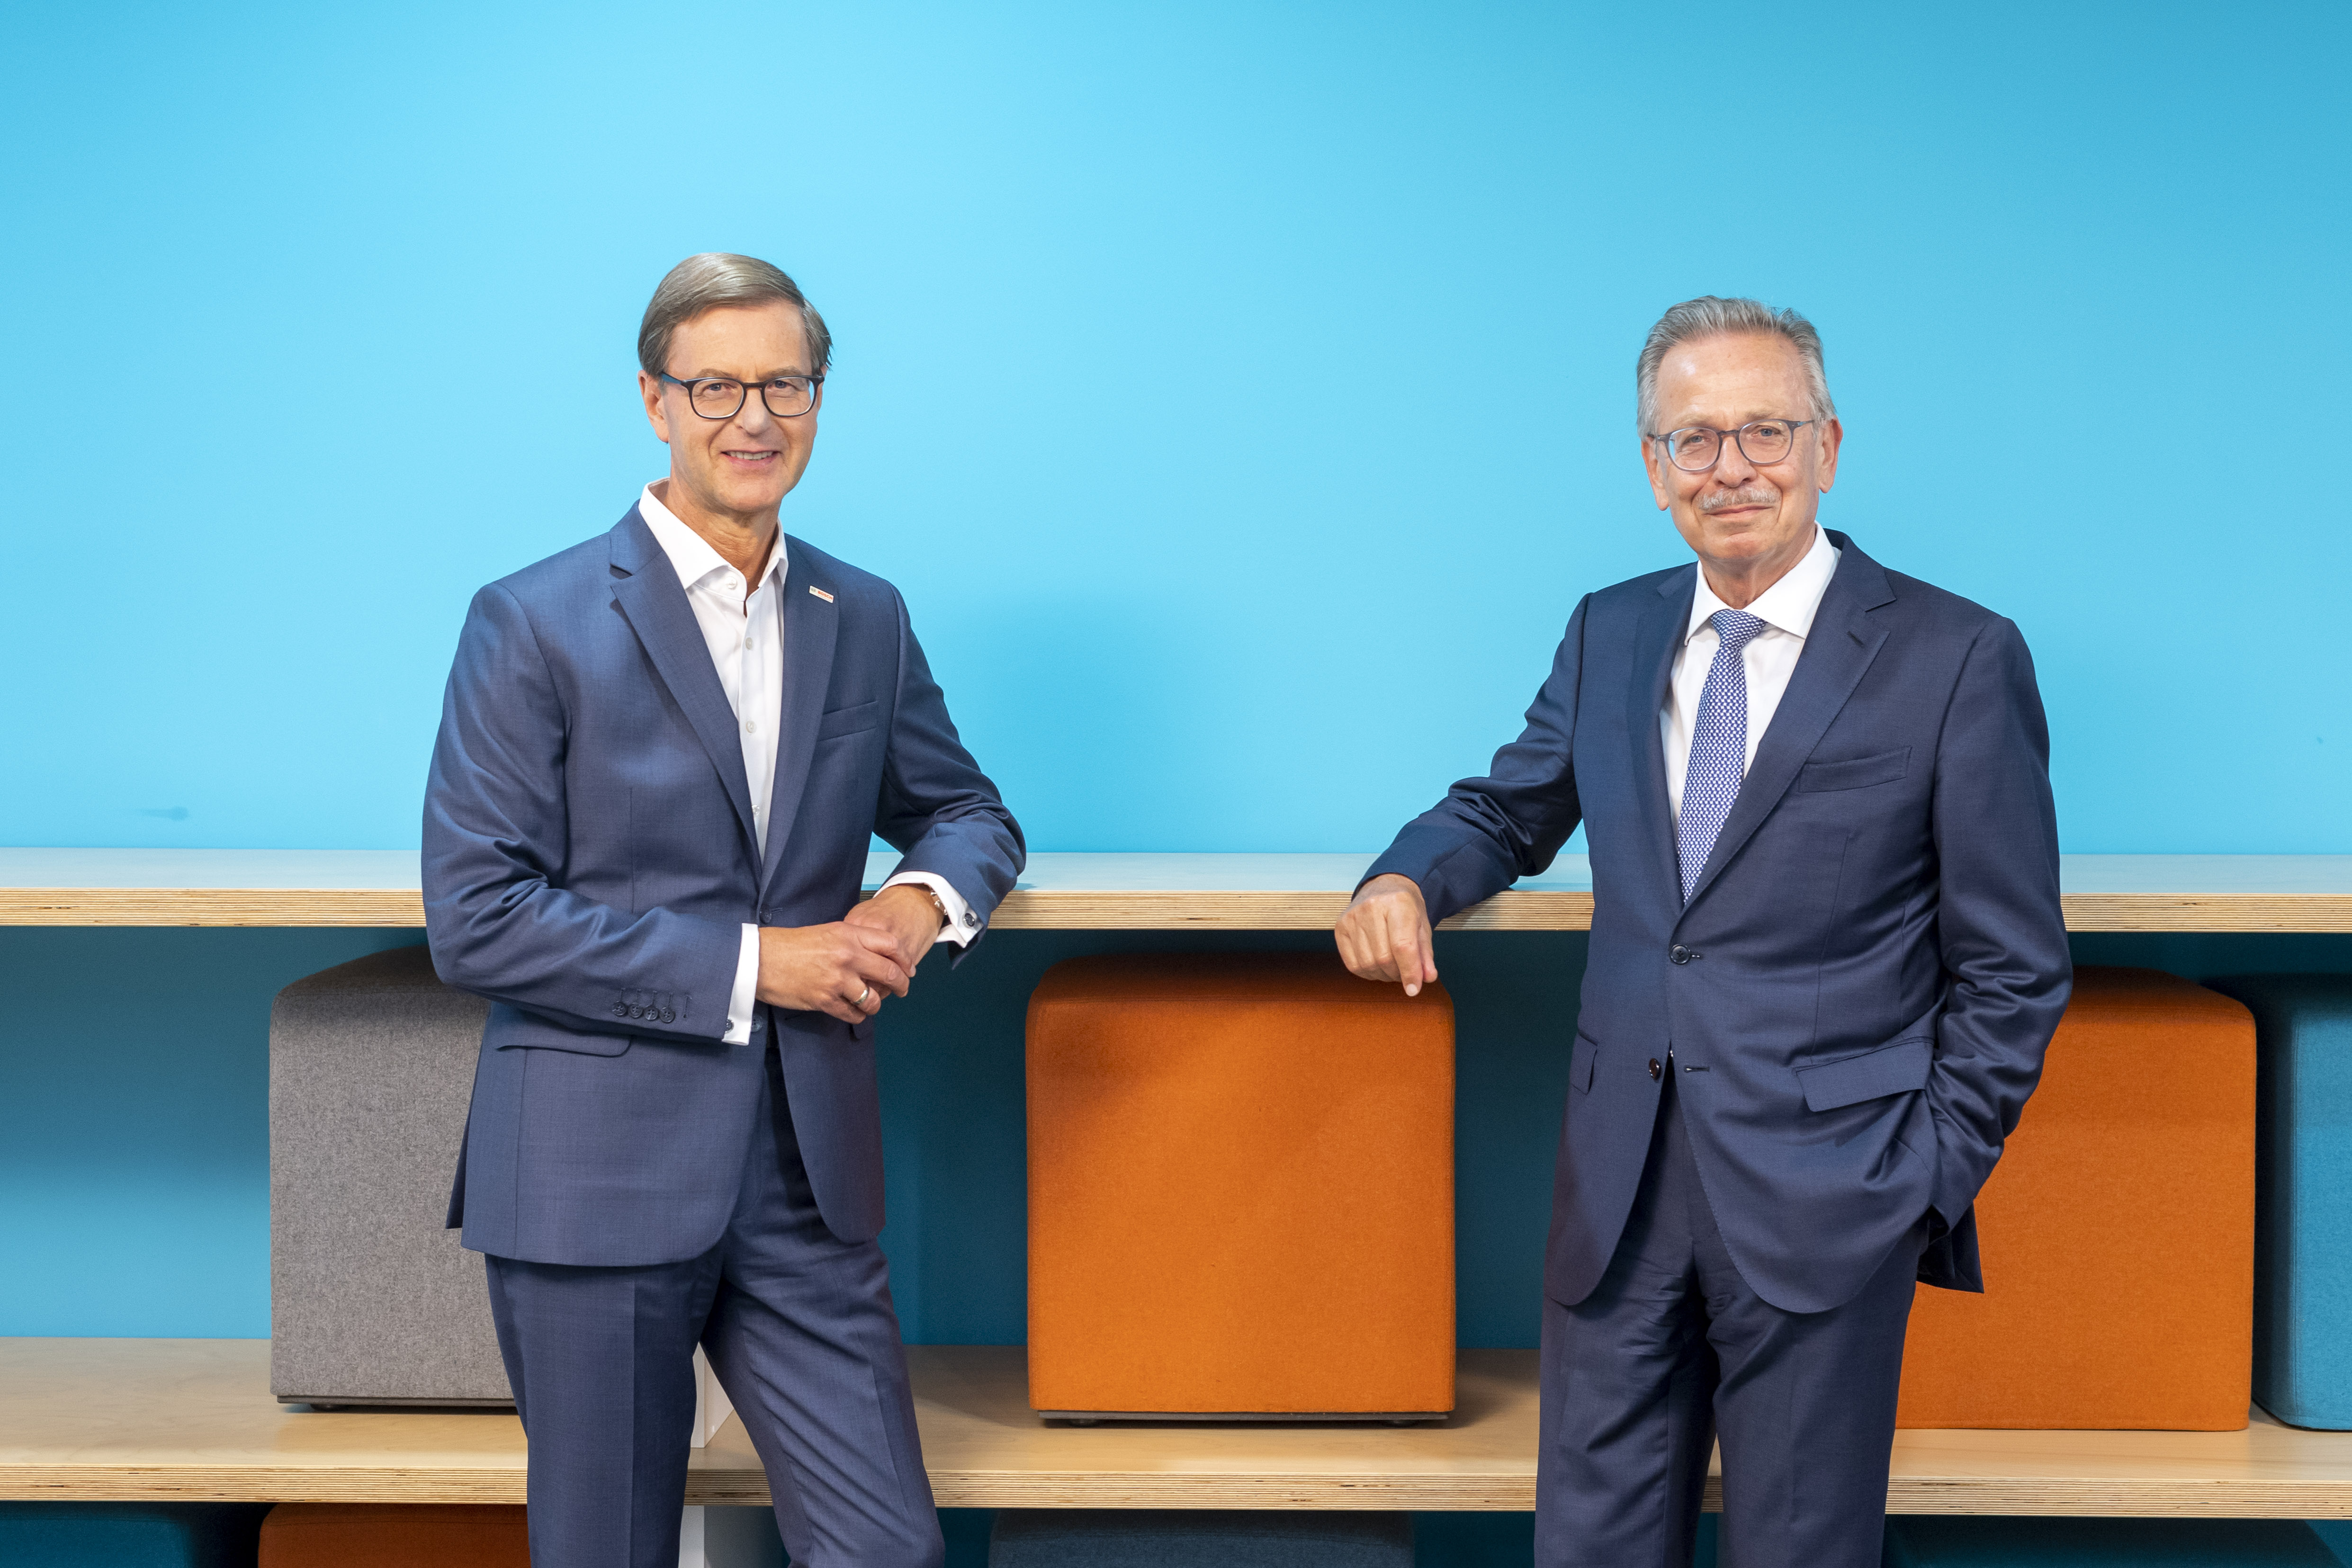 Personnel changes at Robert Bosch GmbH and Robert Bosch Industrietreuhand KG 